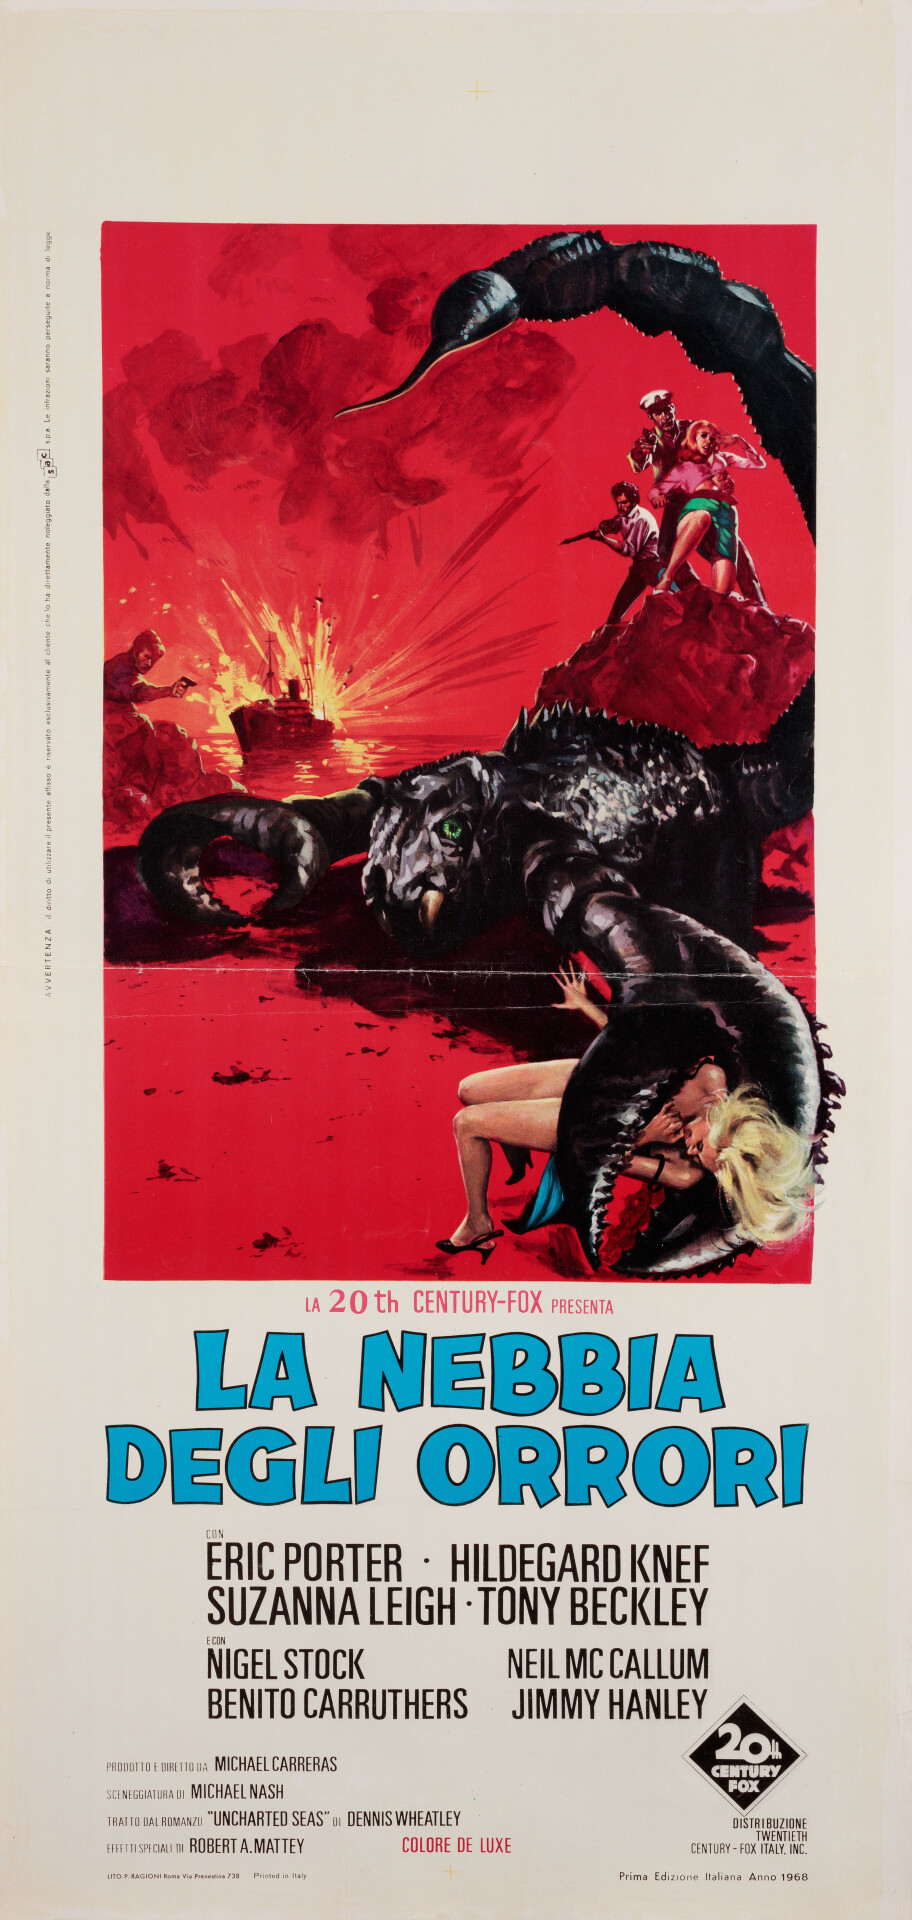 Затерянный континент (The Lost Continent, 1968), режиссёр Майкл Каррерас, итальянский постер к фильму (Hummer horror, 1968 год)